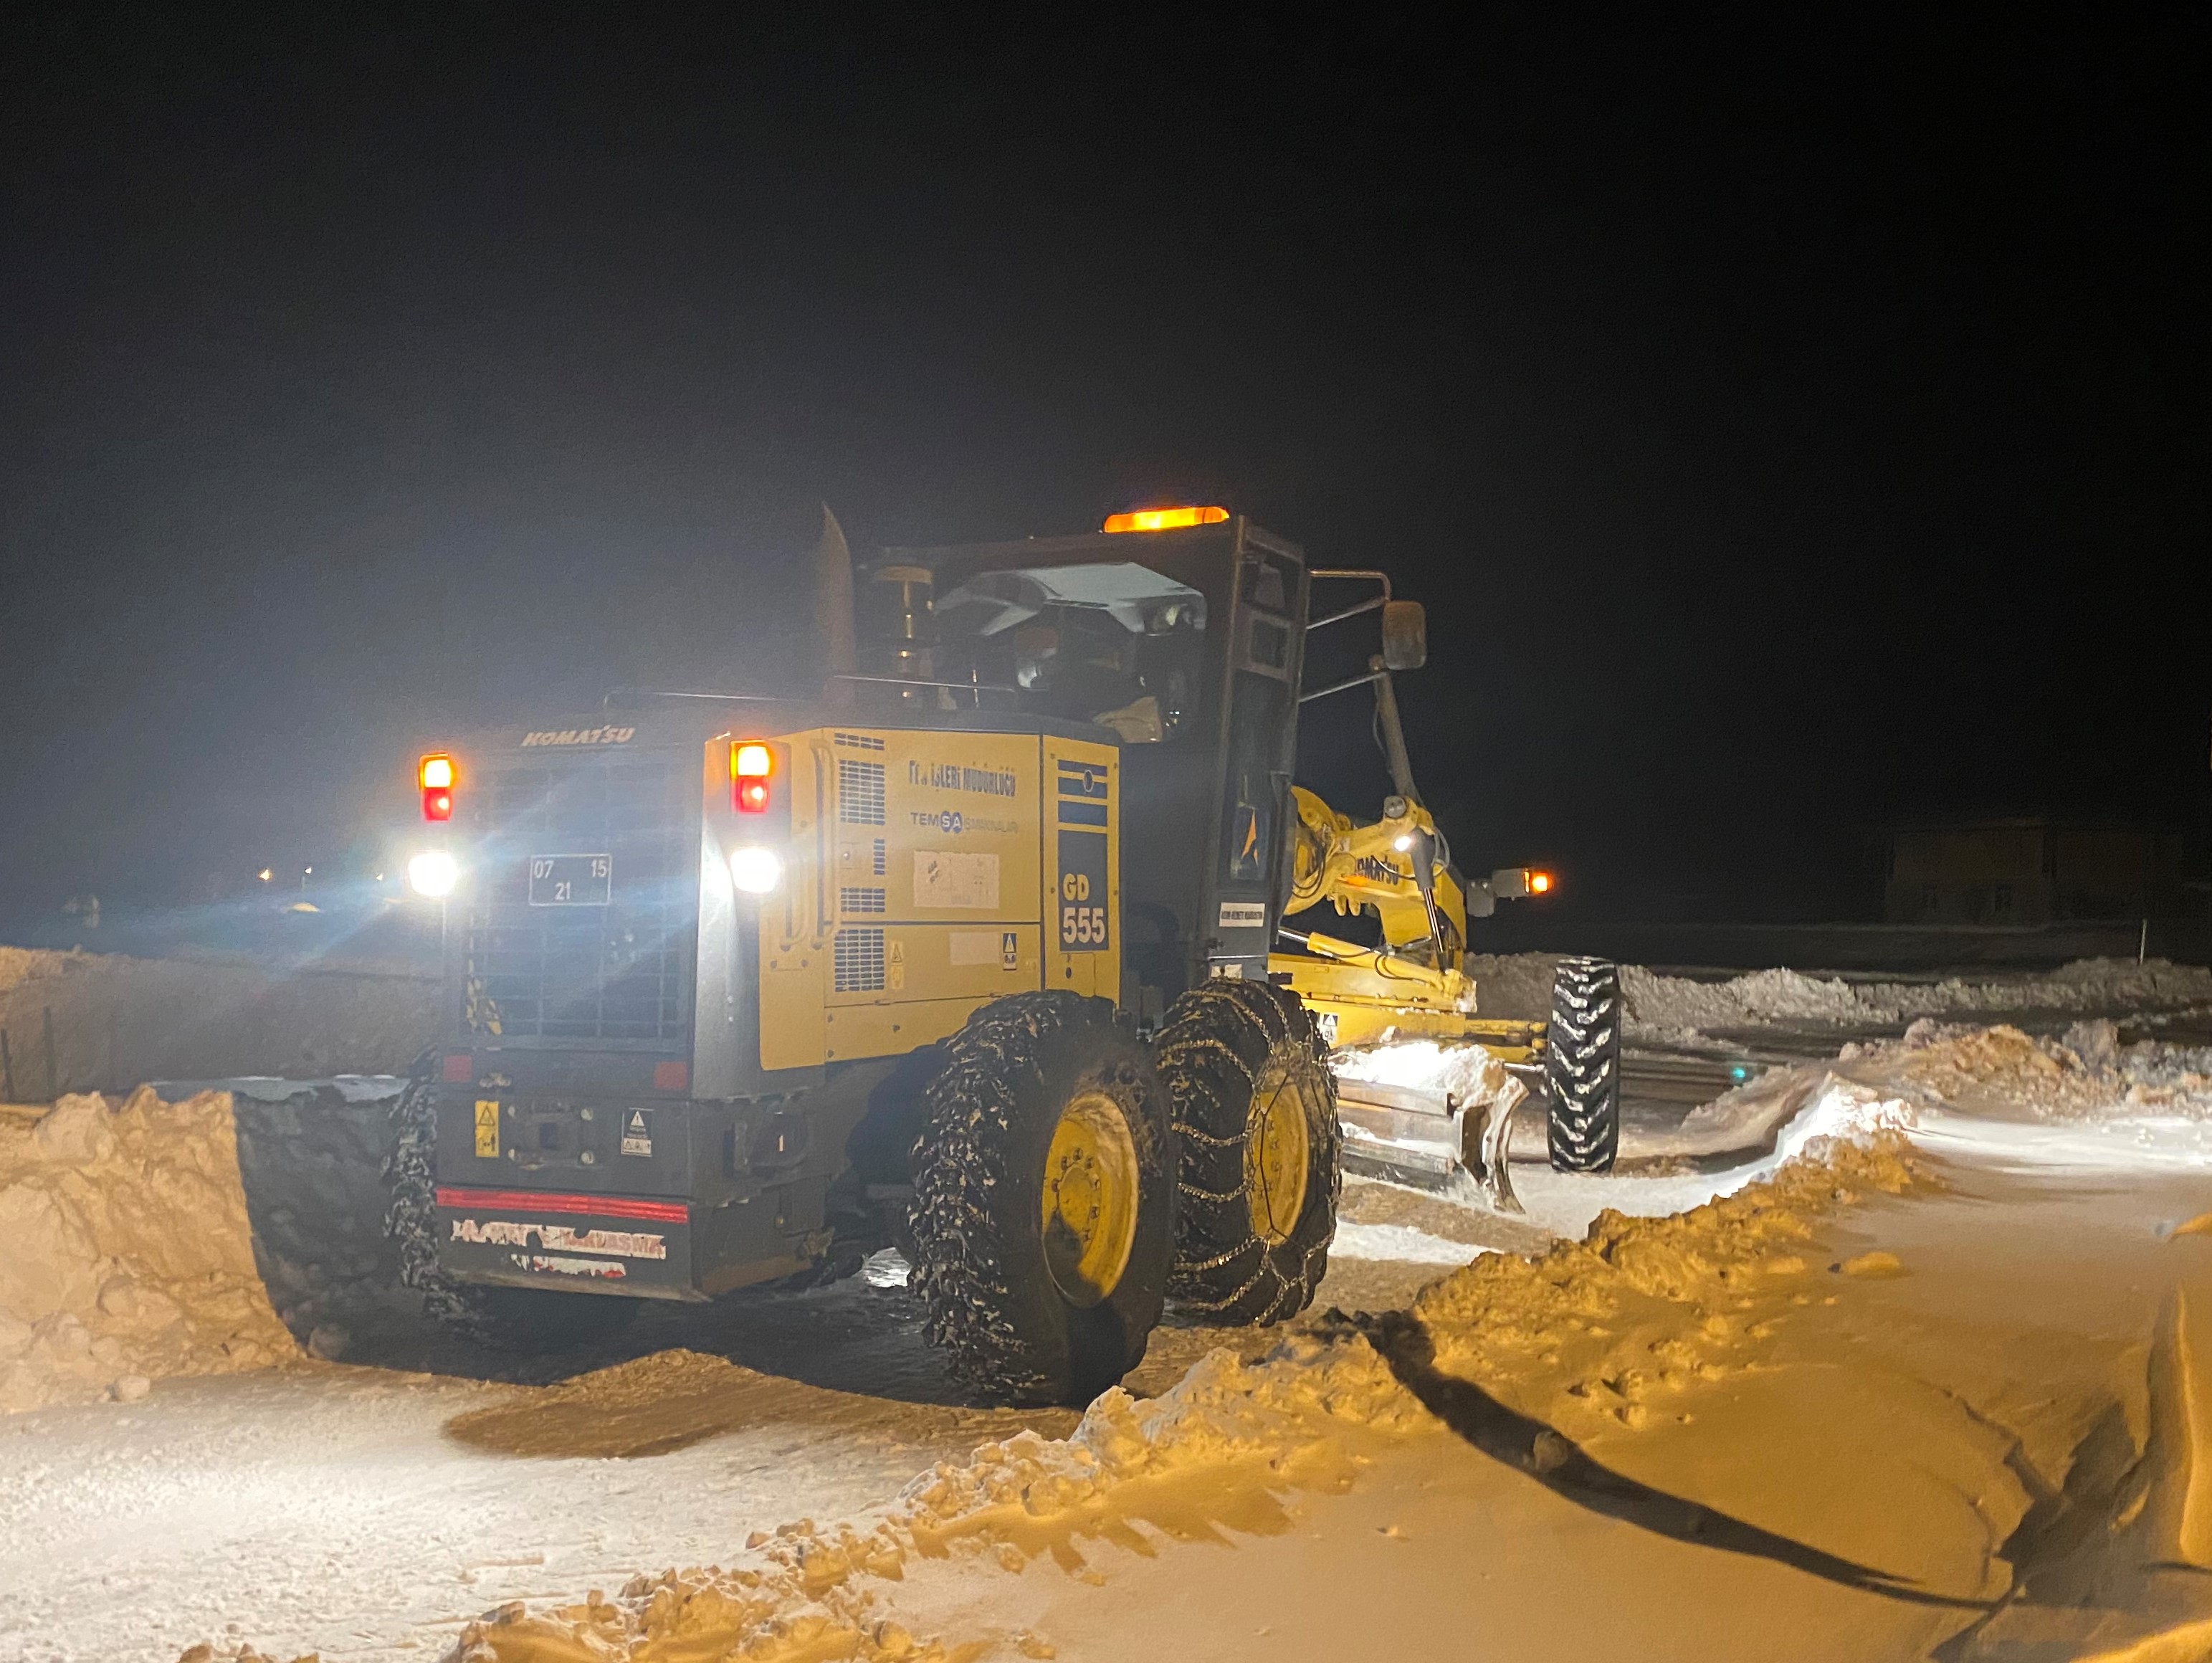 Büyükşehir ekipleri karla aralıksız mücadele ediyor